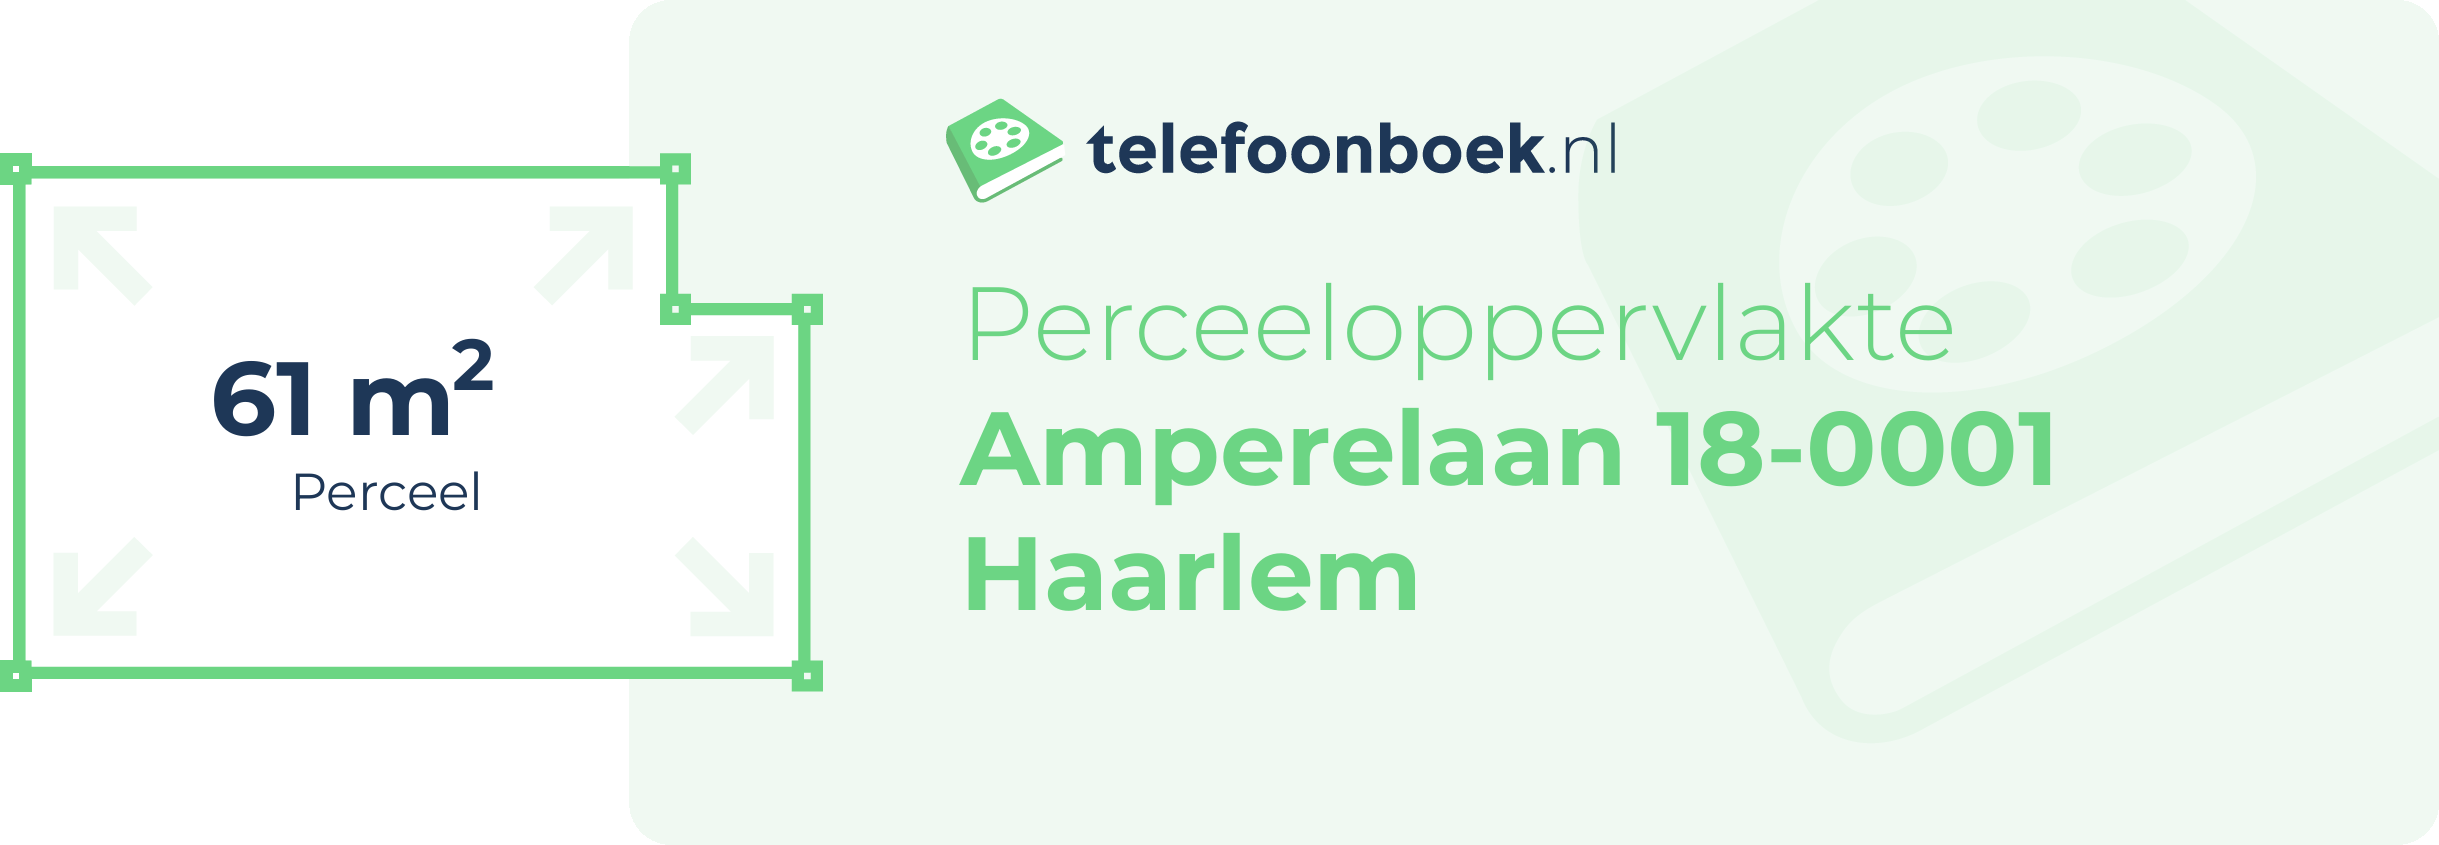 Perceeloppervlakte Amperelaan 18-0001 Haarlem